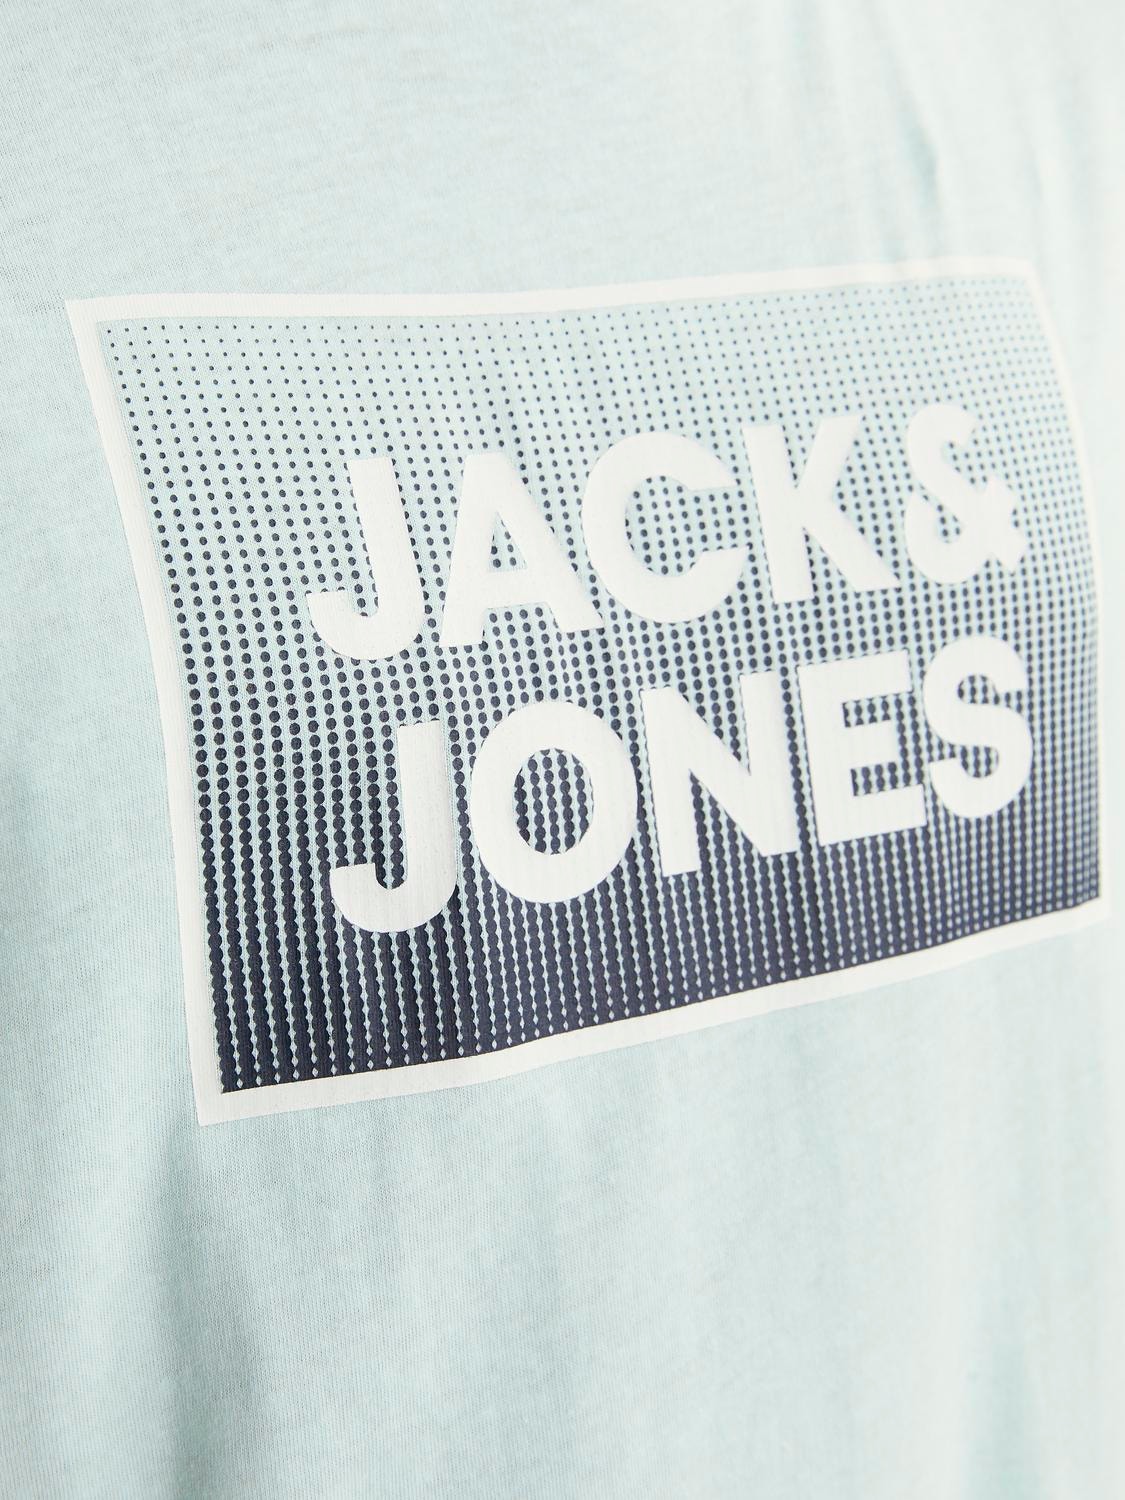 Jack & Jones Logo Rundhals T-shirt -Soothing Sea - 12249331